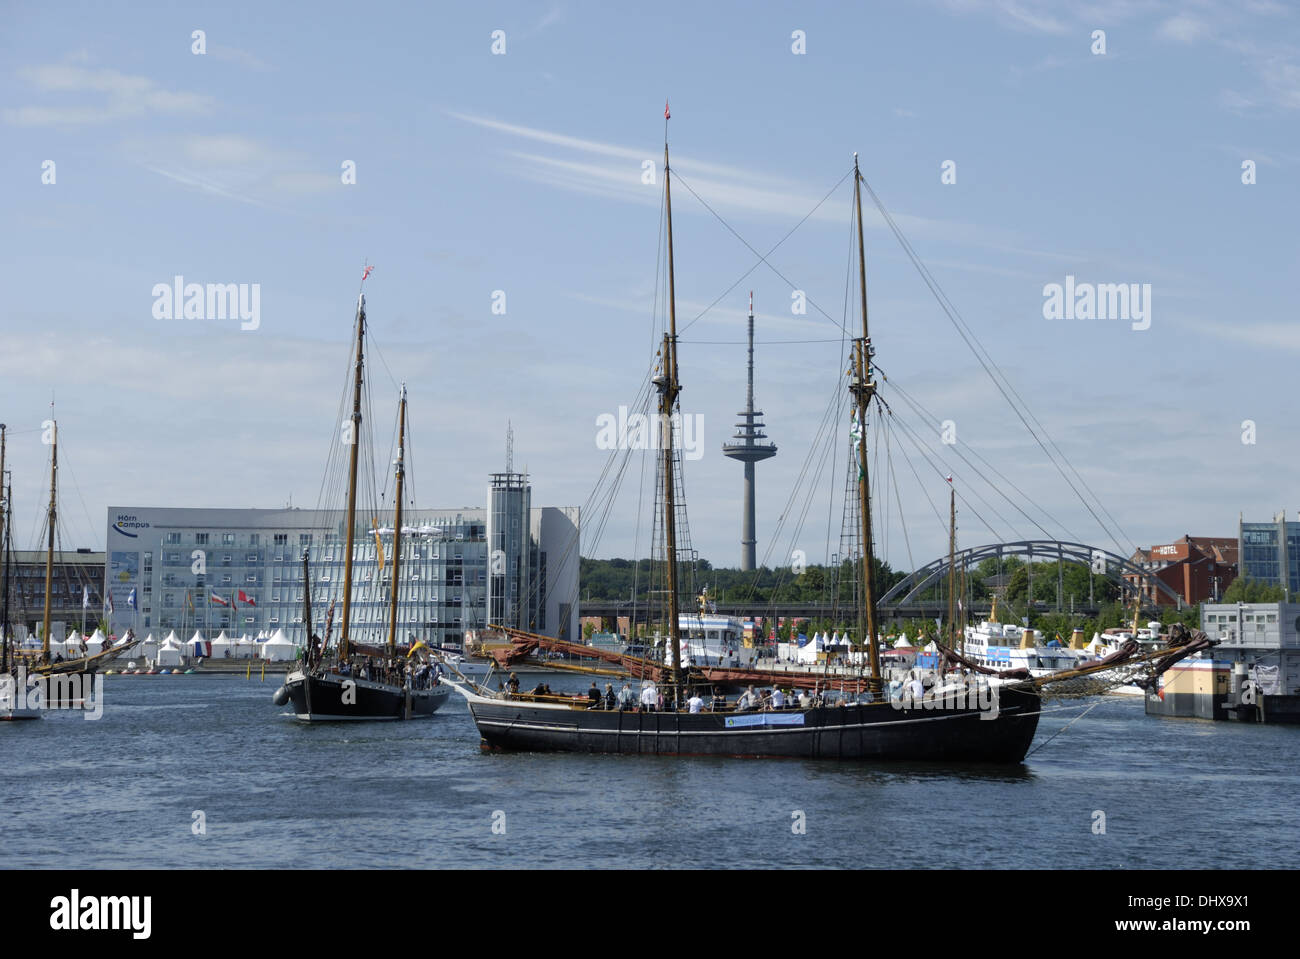 Sailing vessels in Kiel Stock Photo